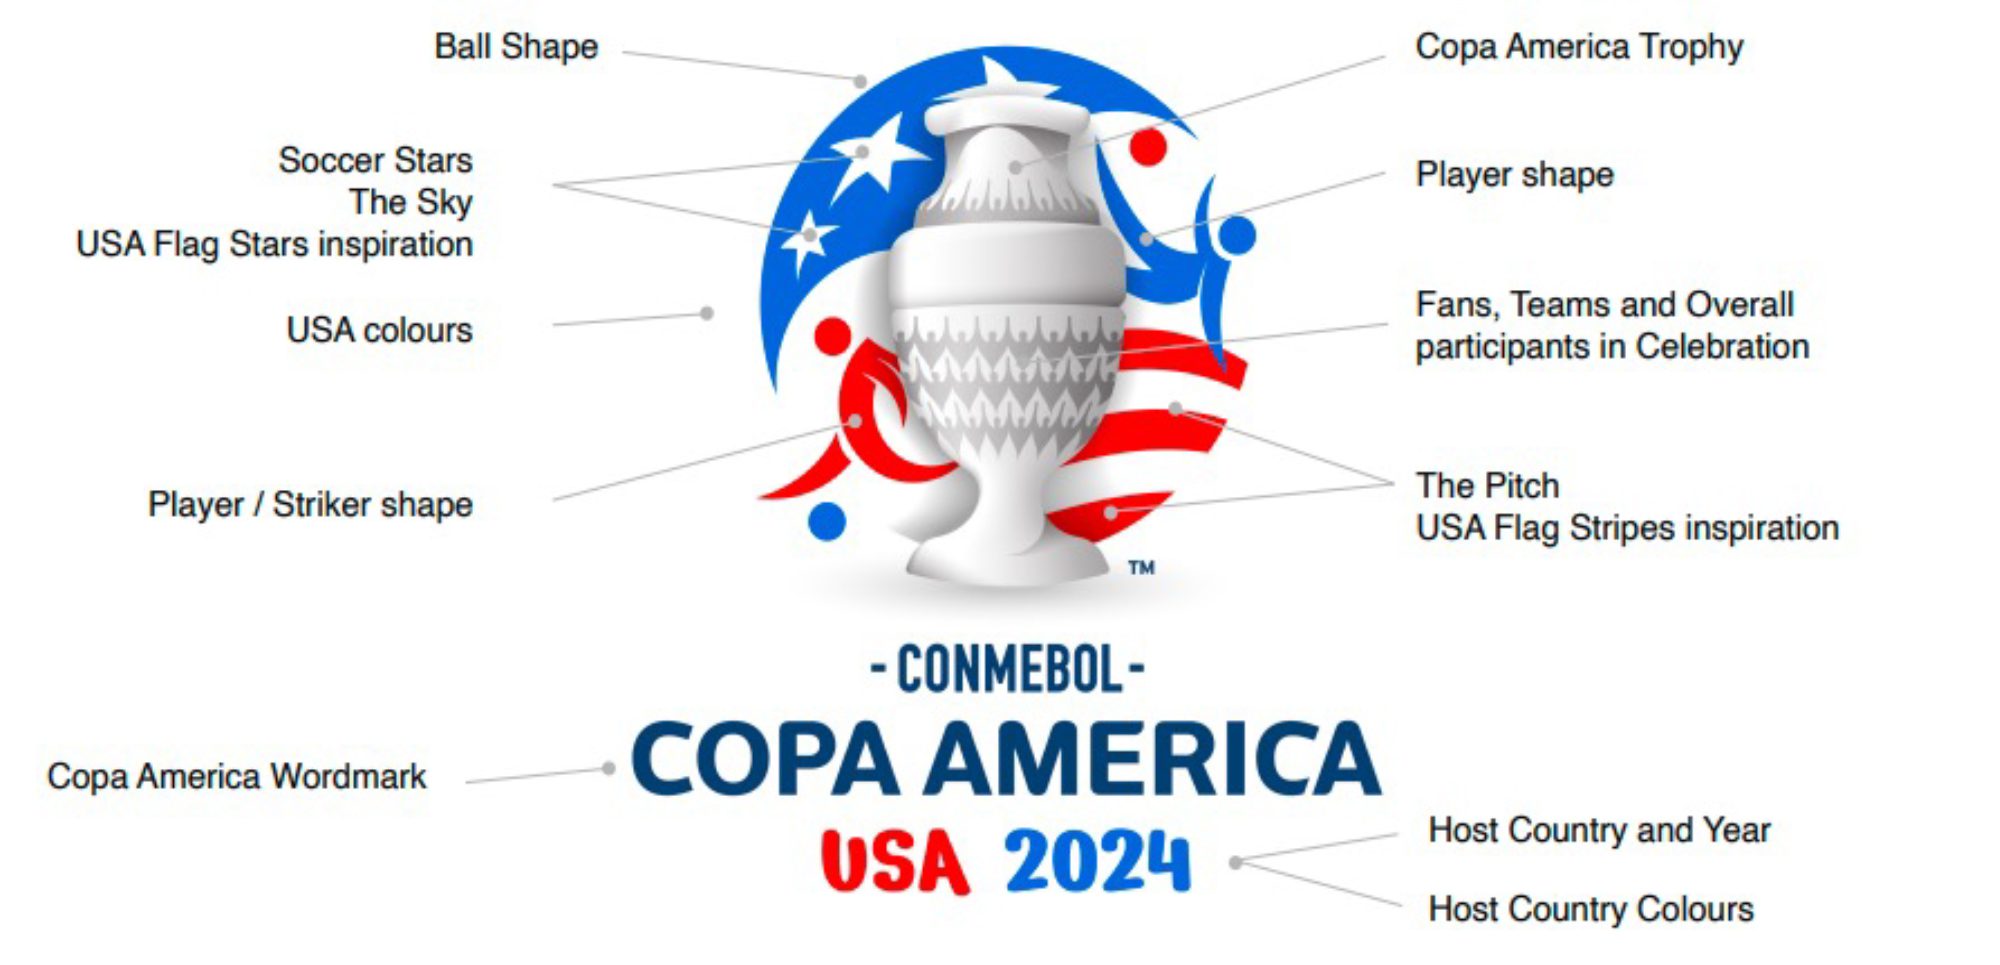 Grupos da CONMEBOL Copa América 2024™️